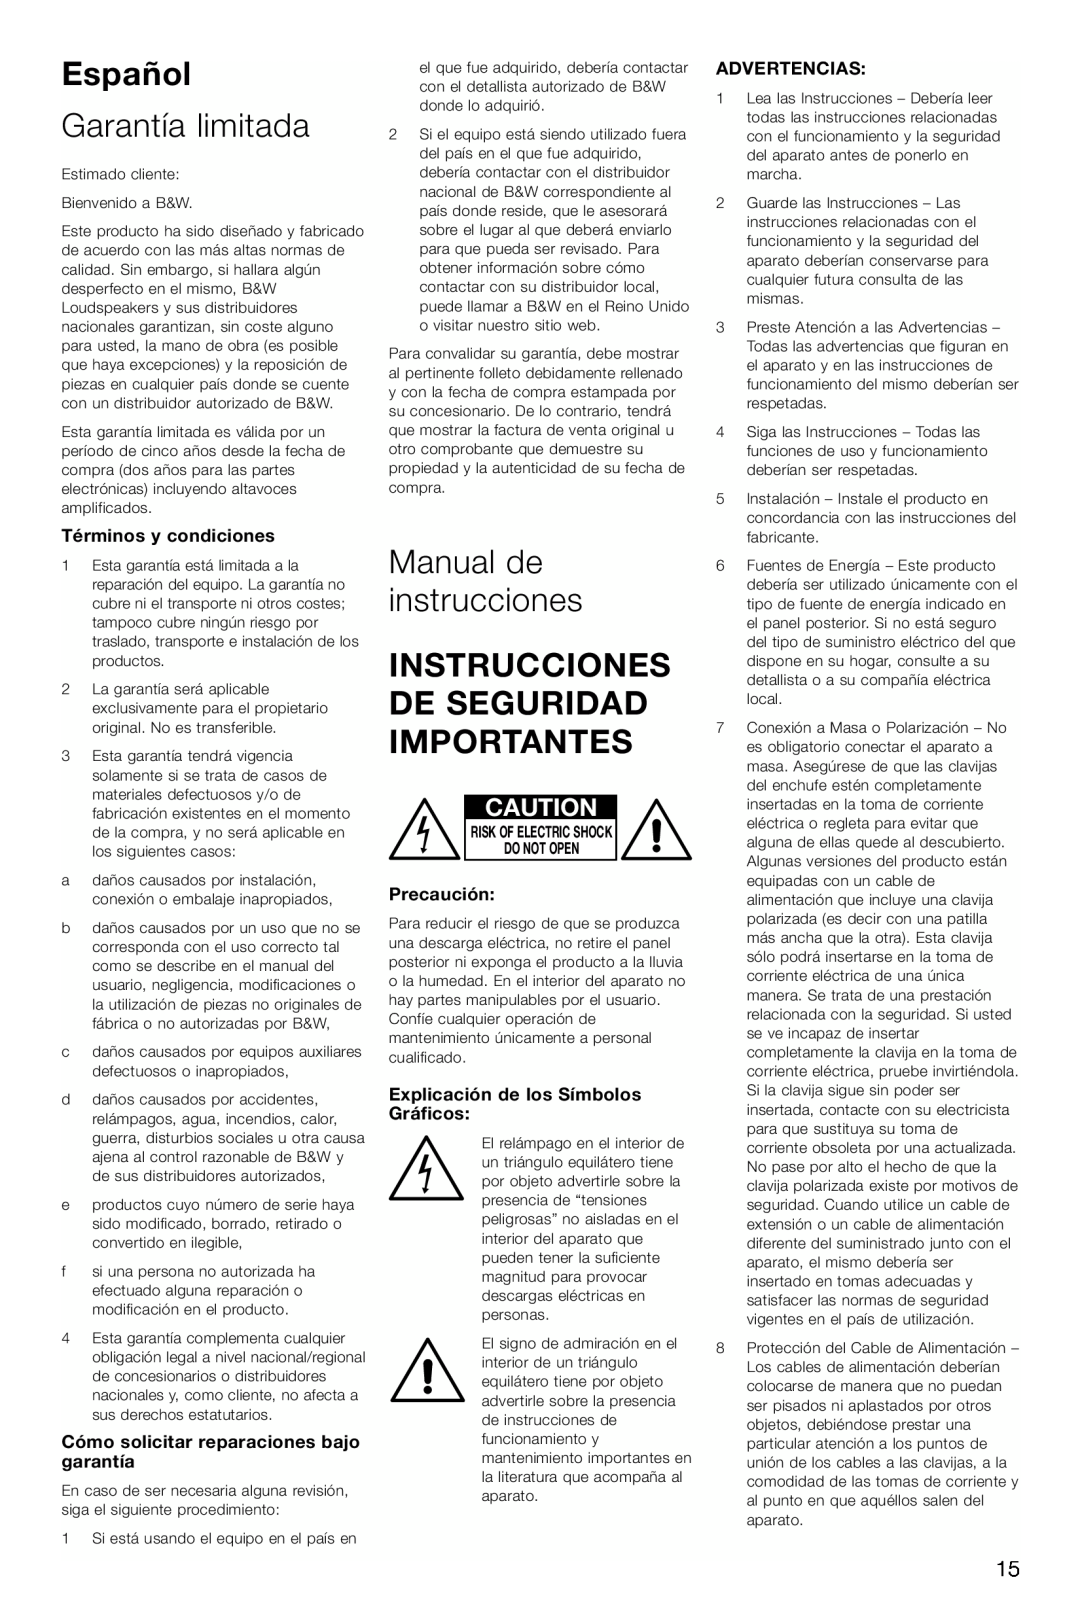 Bowers & Wilkins ASW675 Español, Garantía limitada, Manual de instrucciones, Instrucciones De Seguridad Importantes 